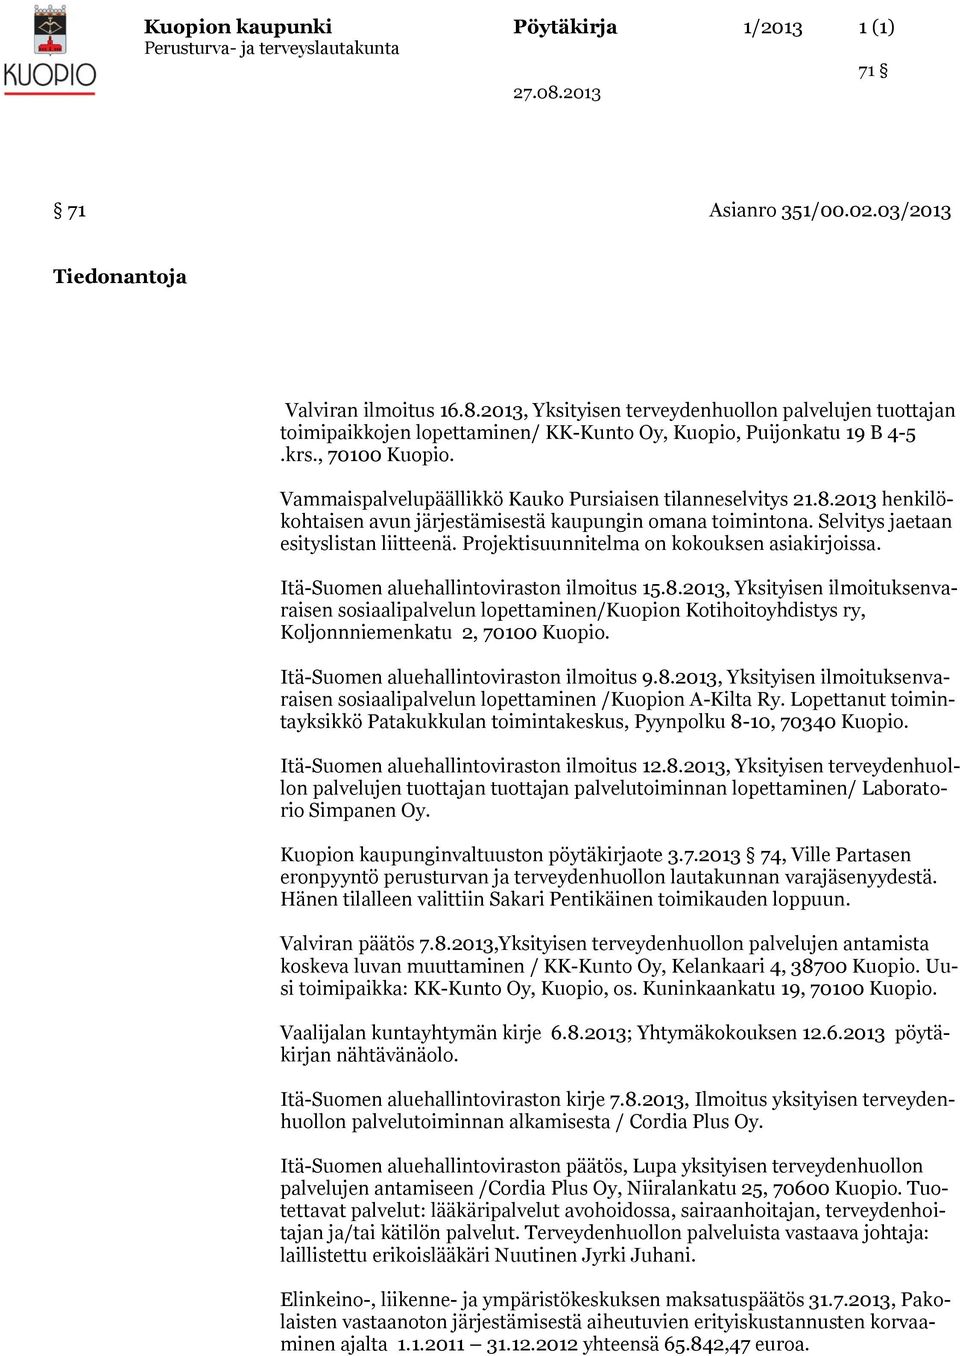 Vammaispalvelupäällikkö Kauko Pursiaisen tilanneselvitys 21.8.2013 henkilökohtaisen avun järjestämisestä kaupungin omana toimintona. Selvitys jaetaan esityslistan liitteenä.